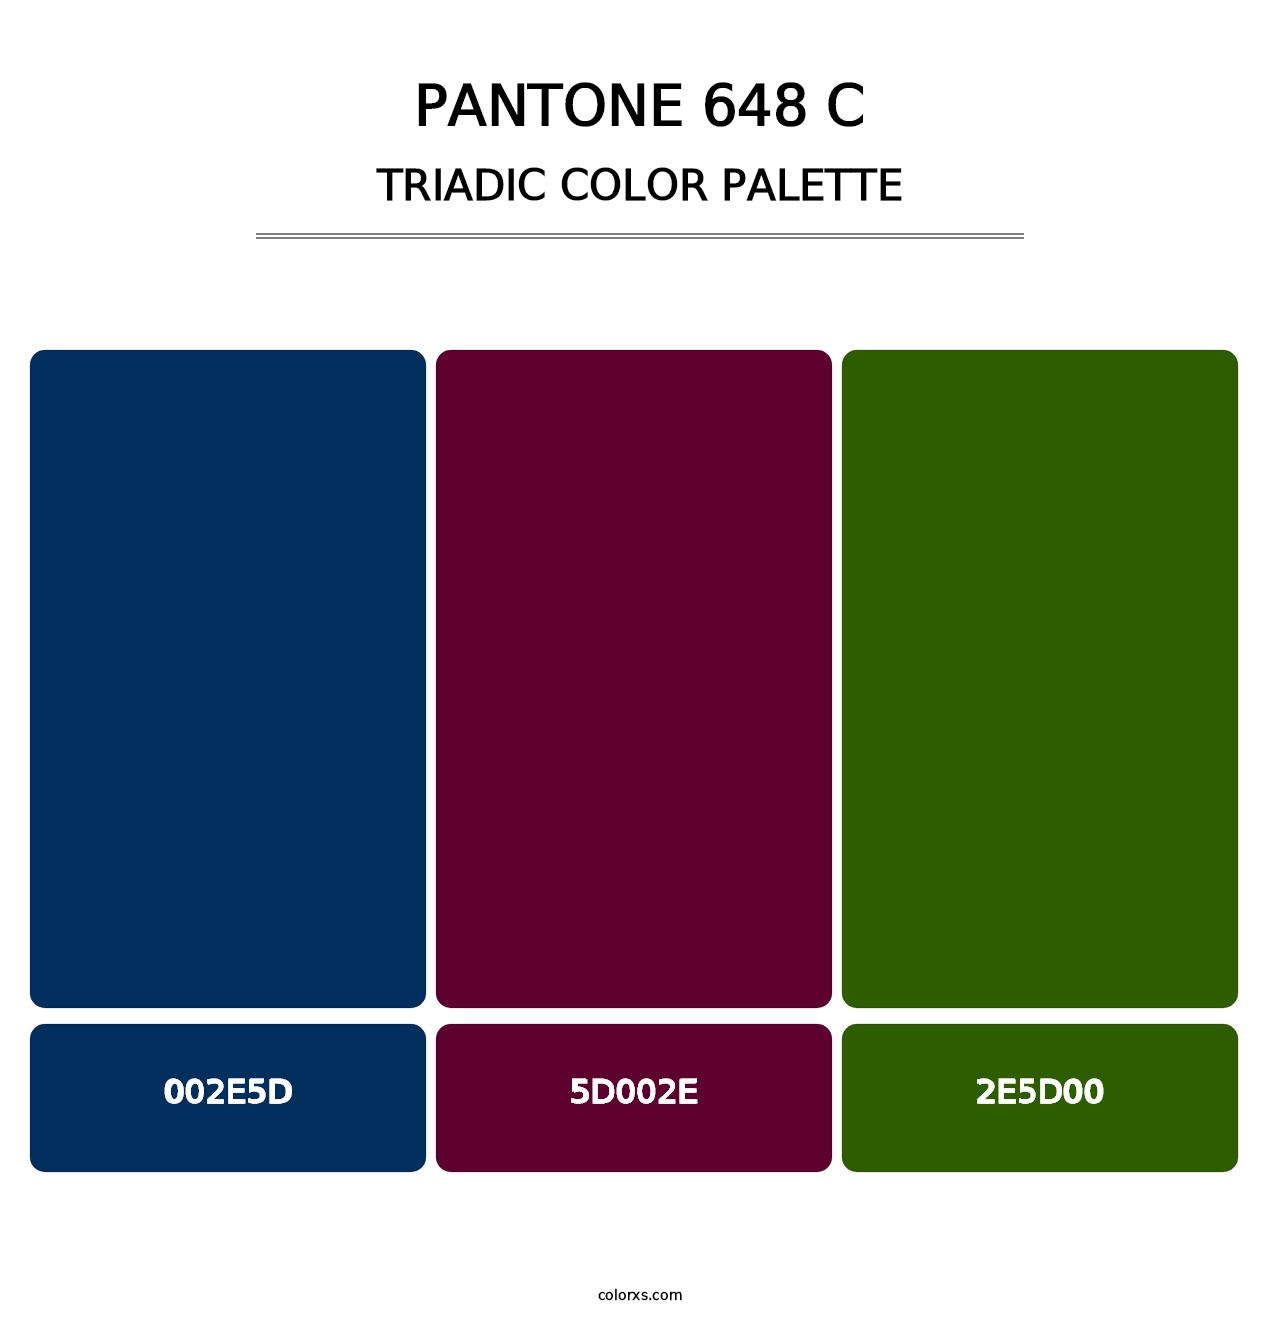 PANTONE 648 C - Triadic Color Palette